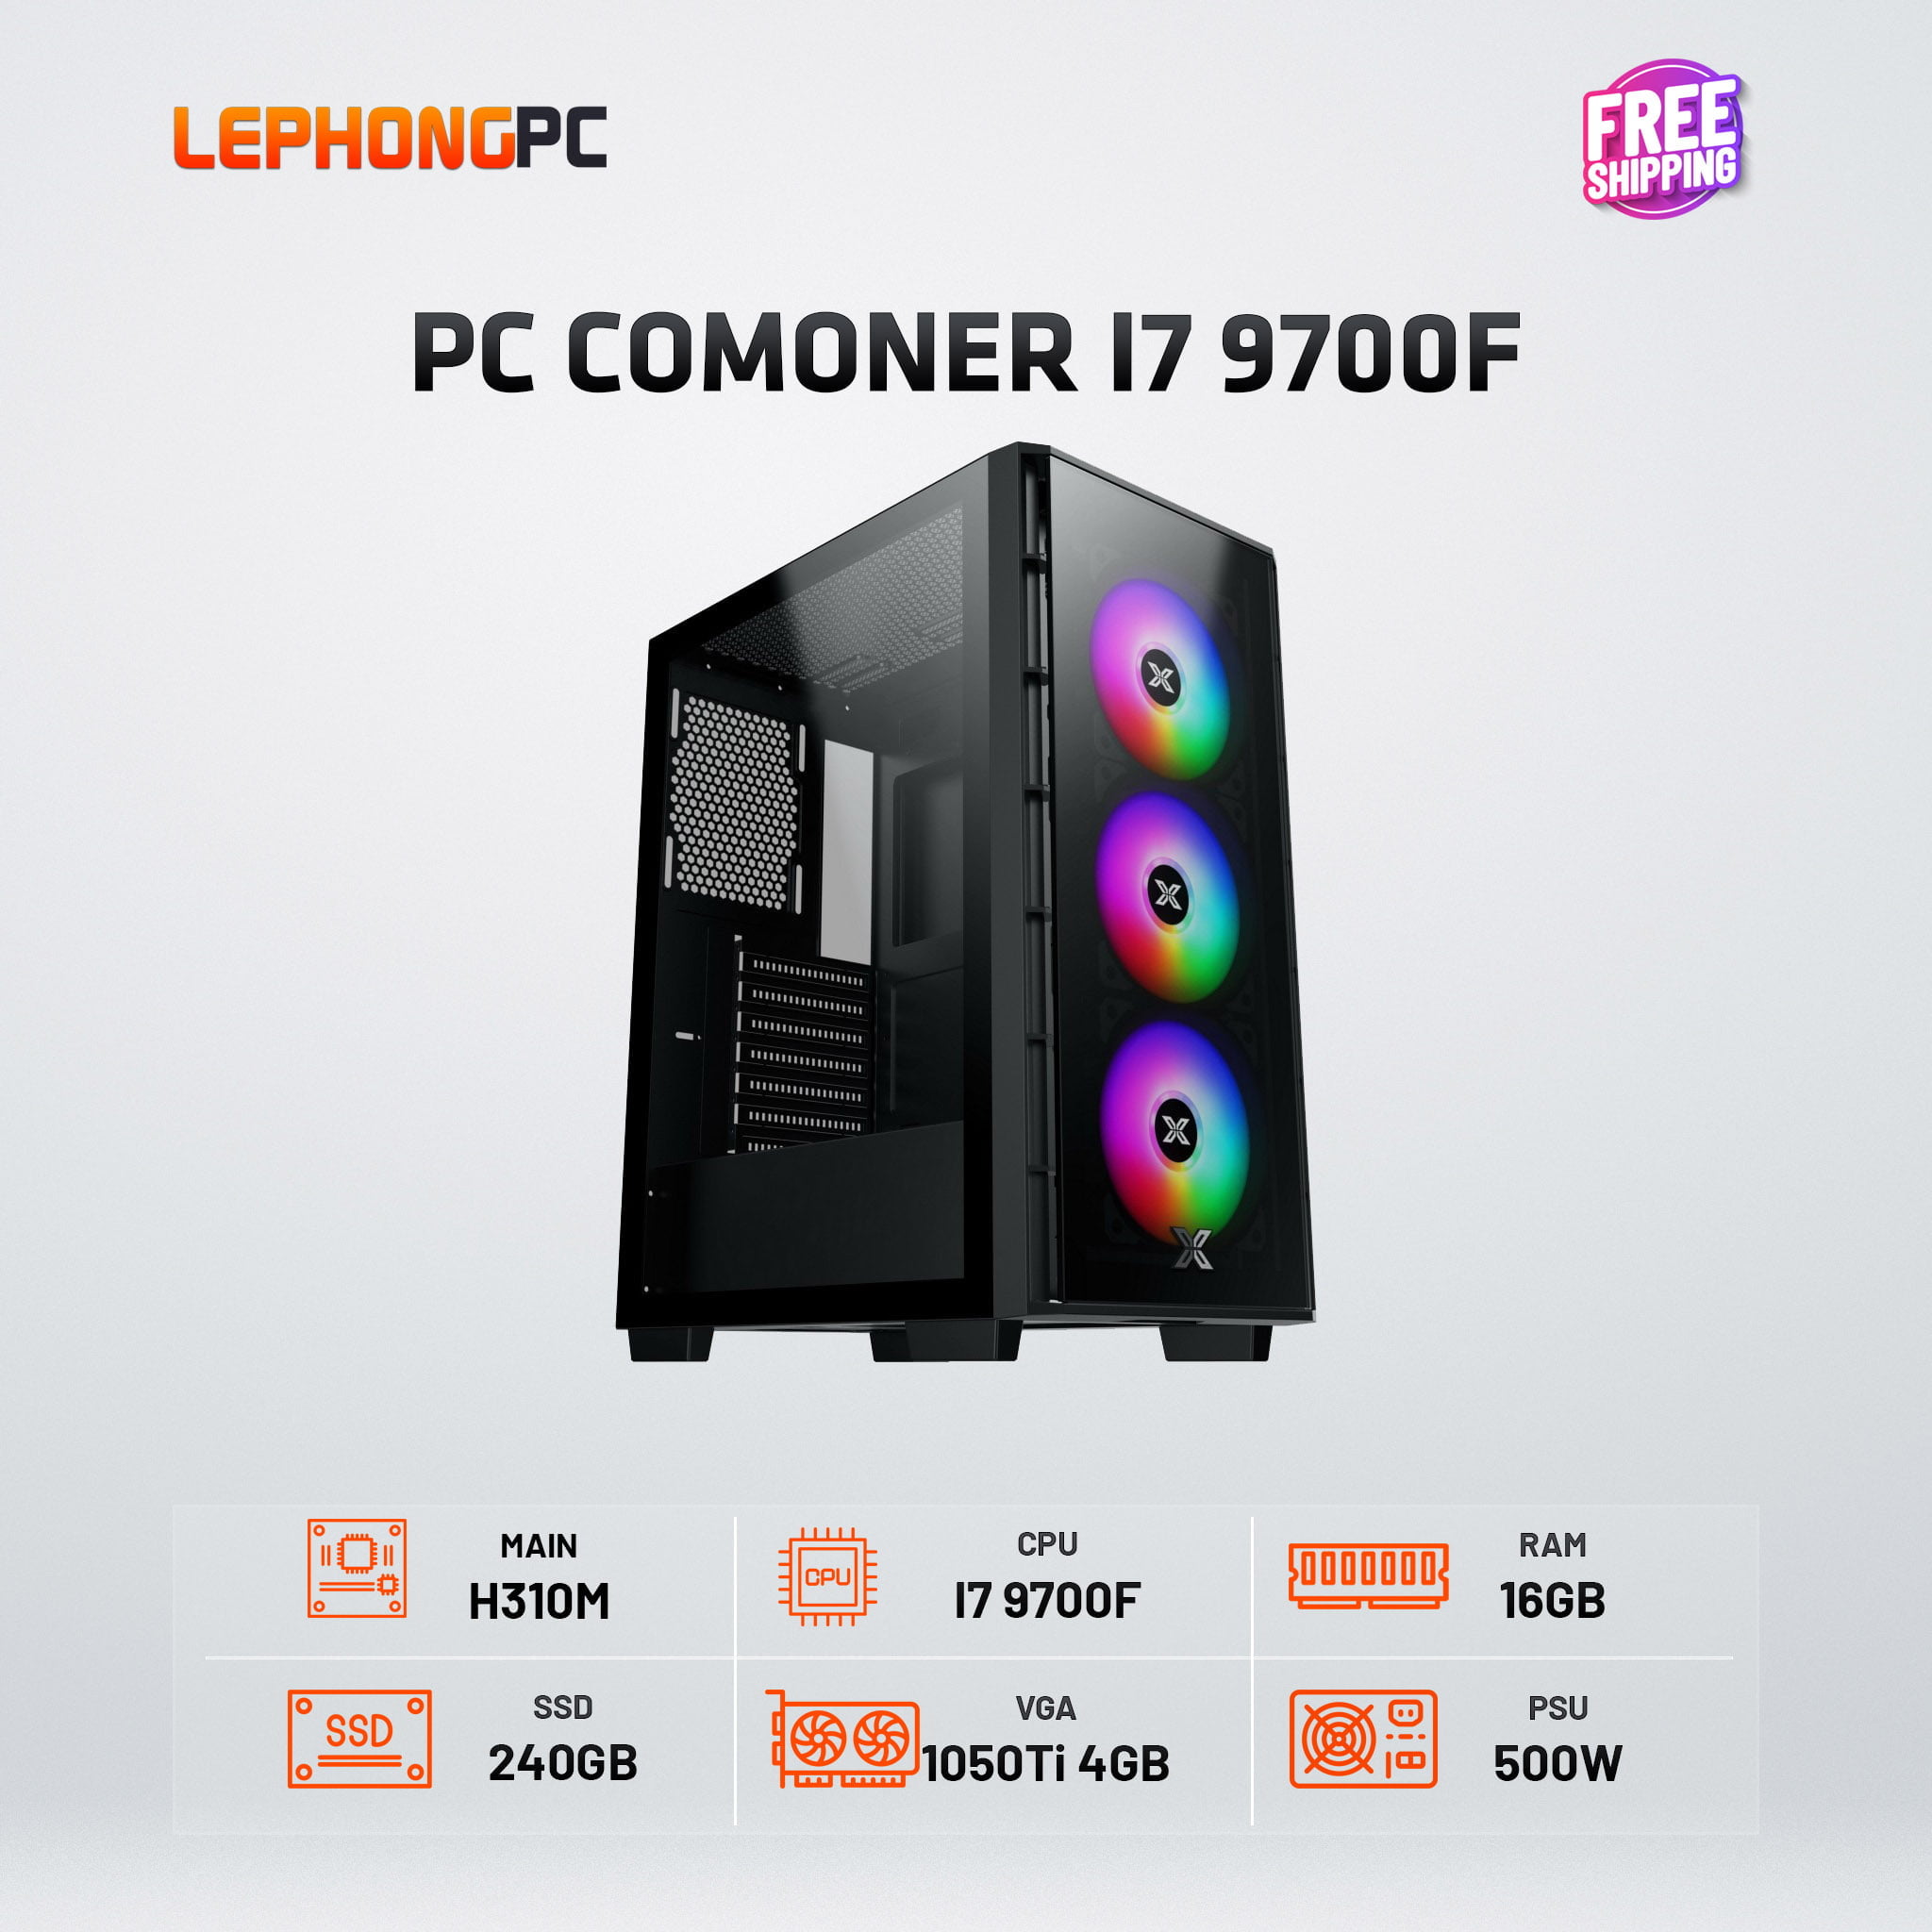 PC COMONER I7 9700F